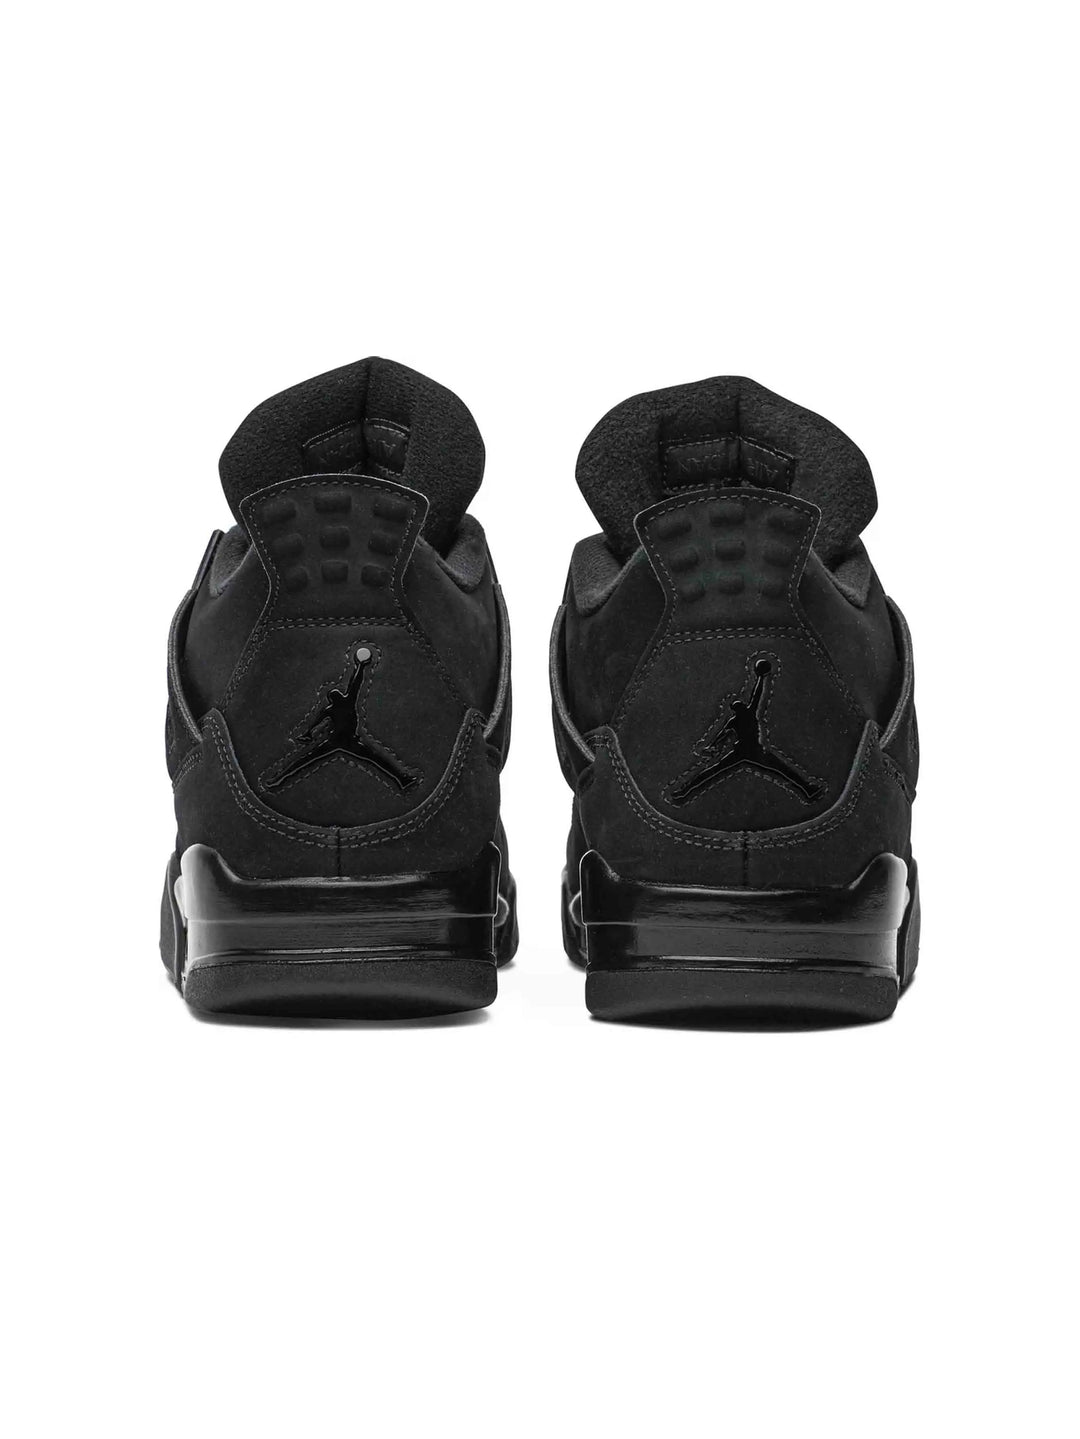 Nike Air Jordan 4 Retro Black Cat (2020) Prior